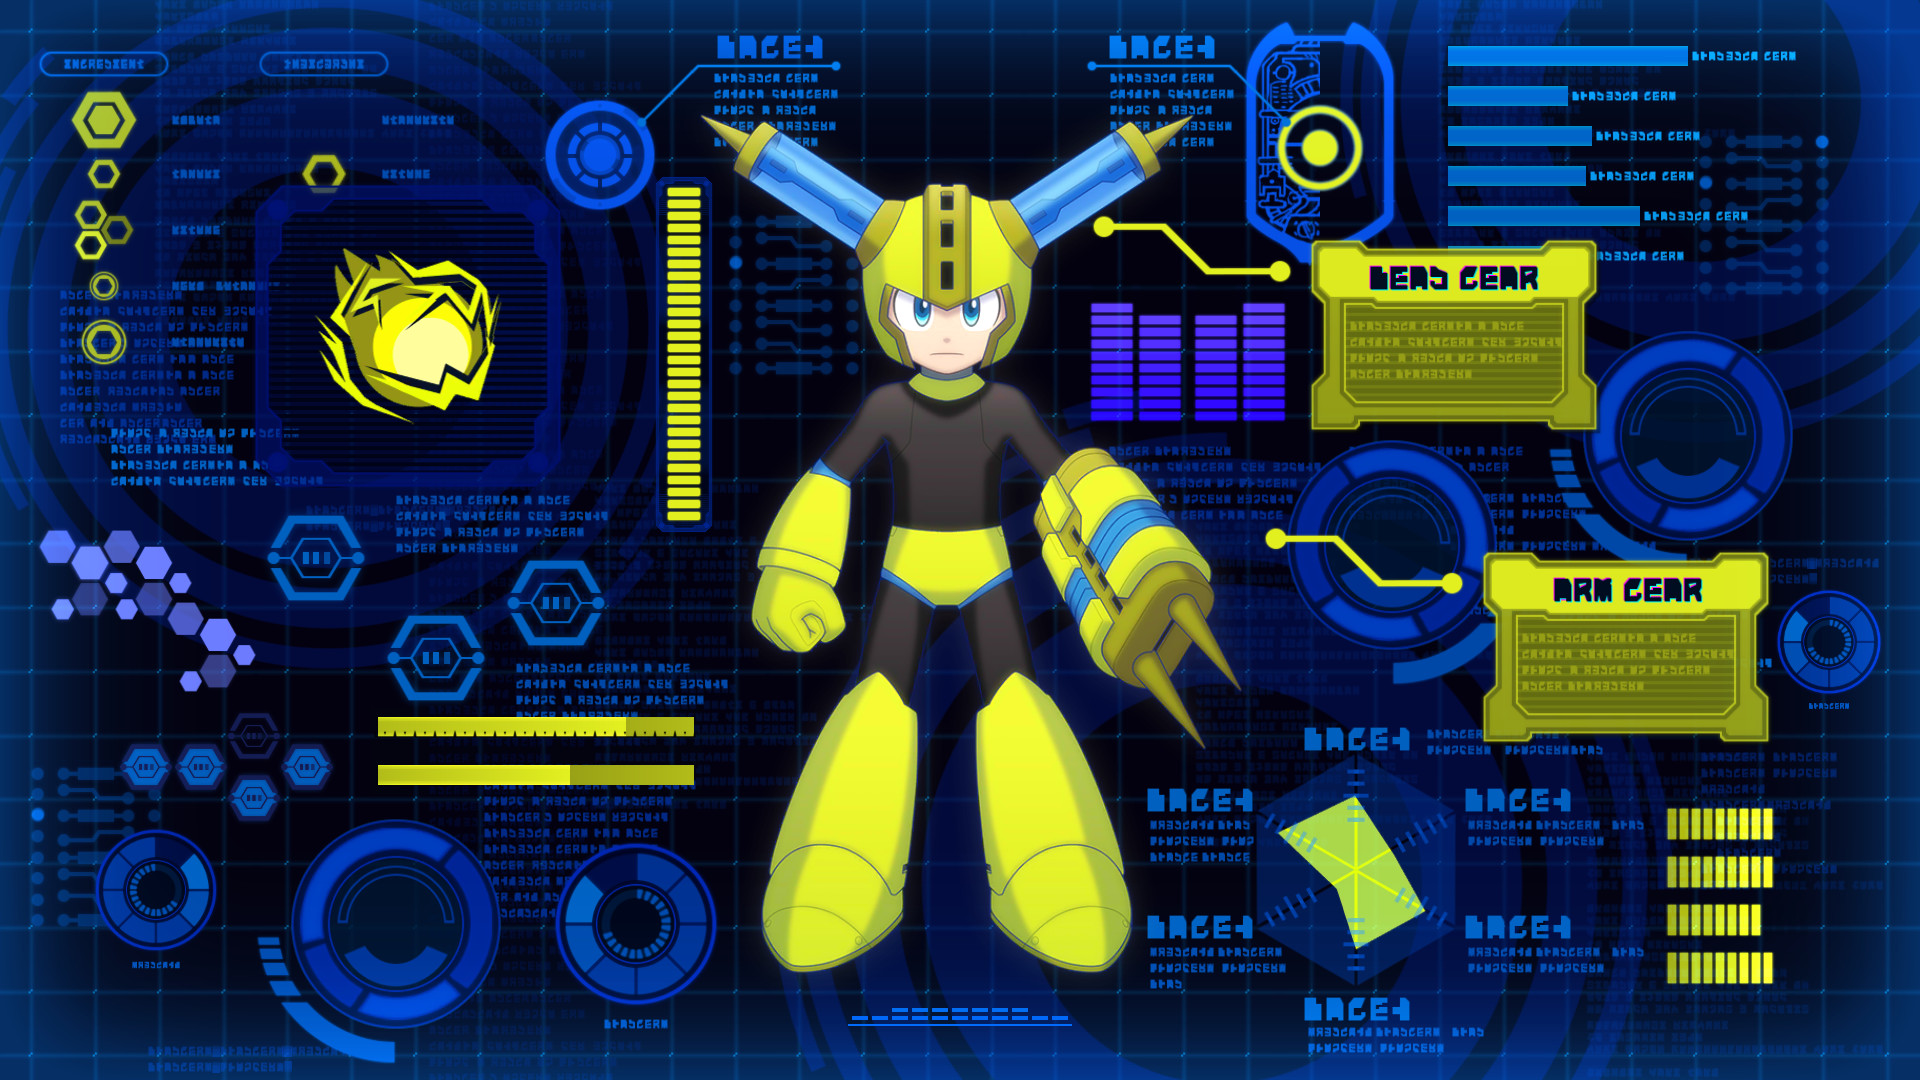 Mega Man 11 / ロックマン11 運命の歯車!! Free Download